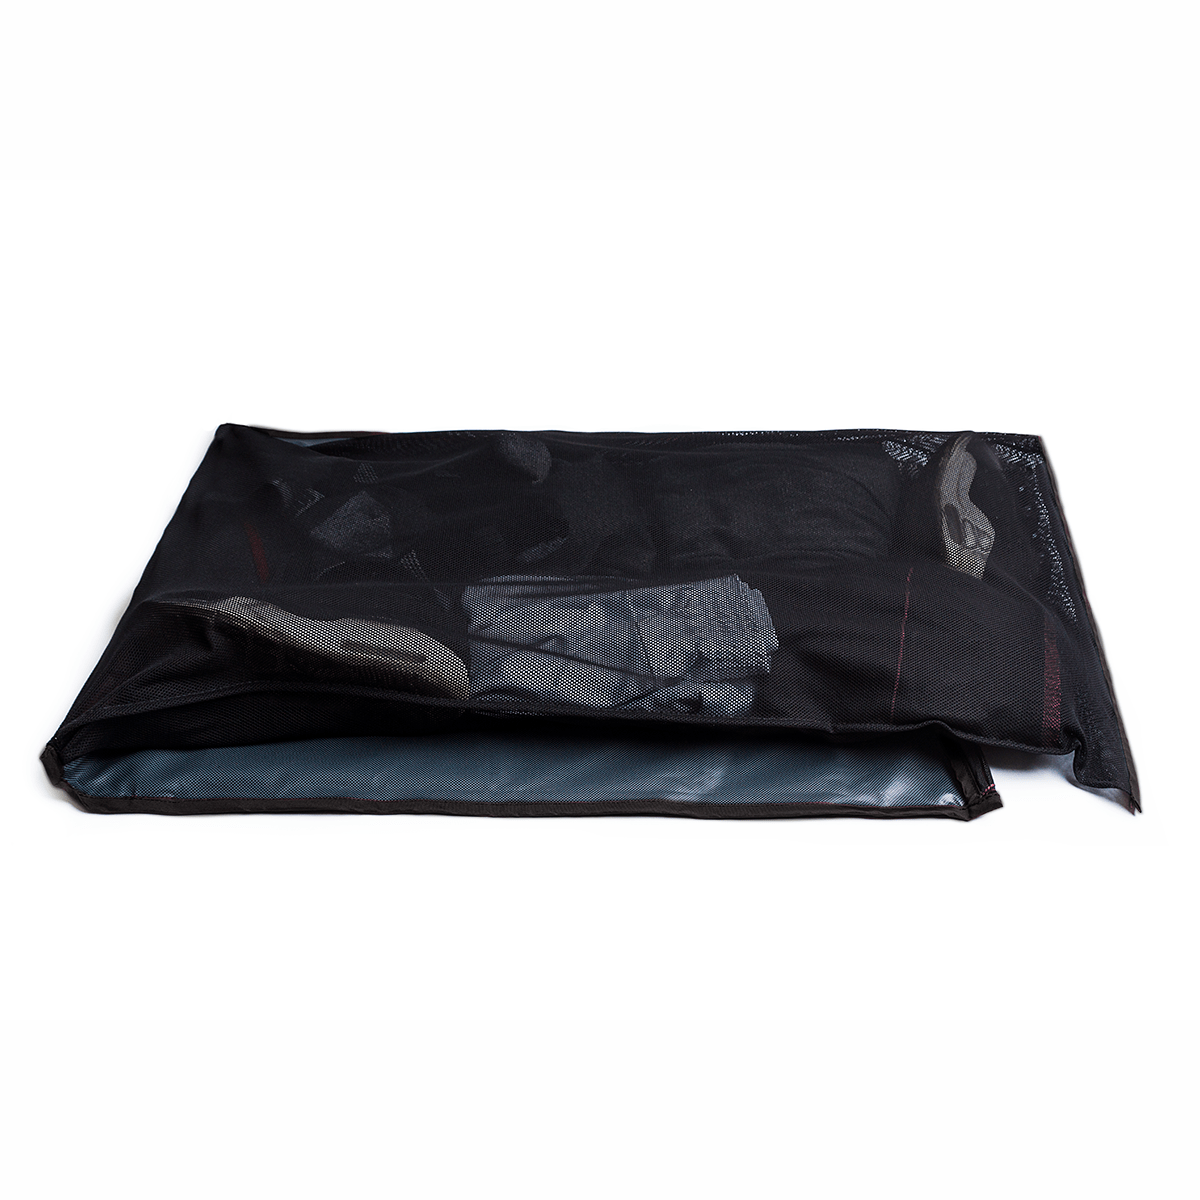 STNKY Bag Standard Black Wash Net Gear Inside